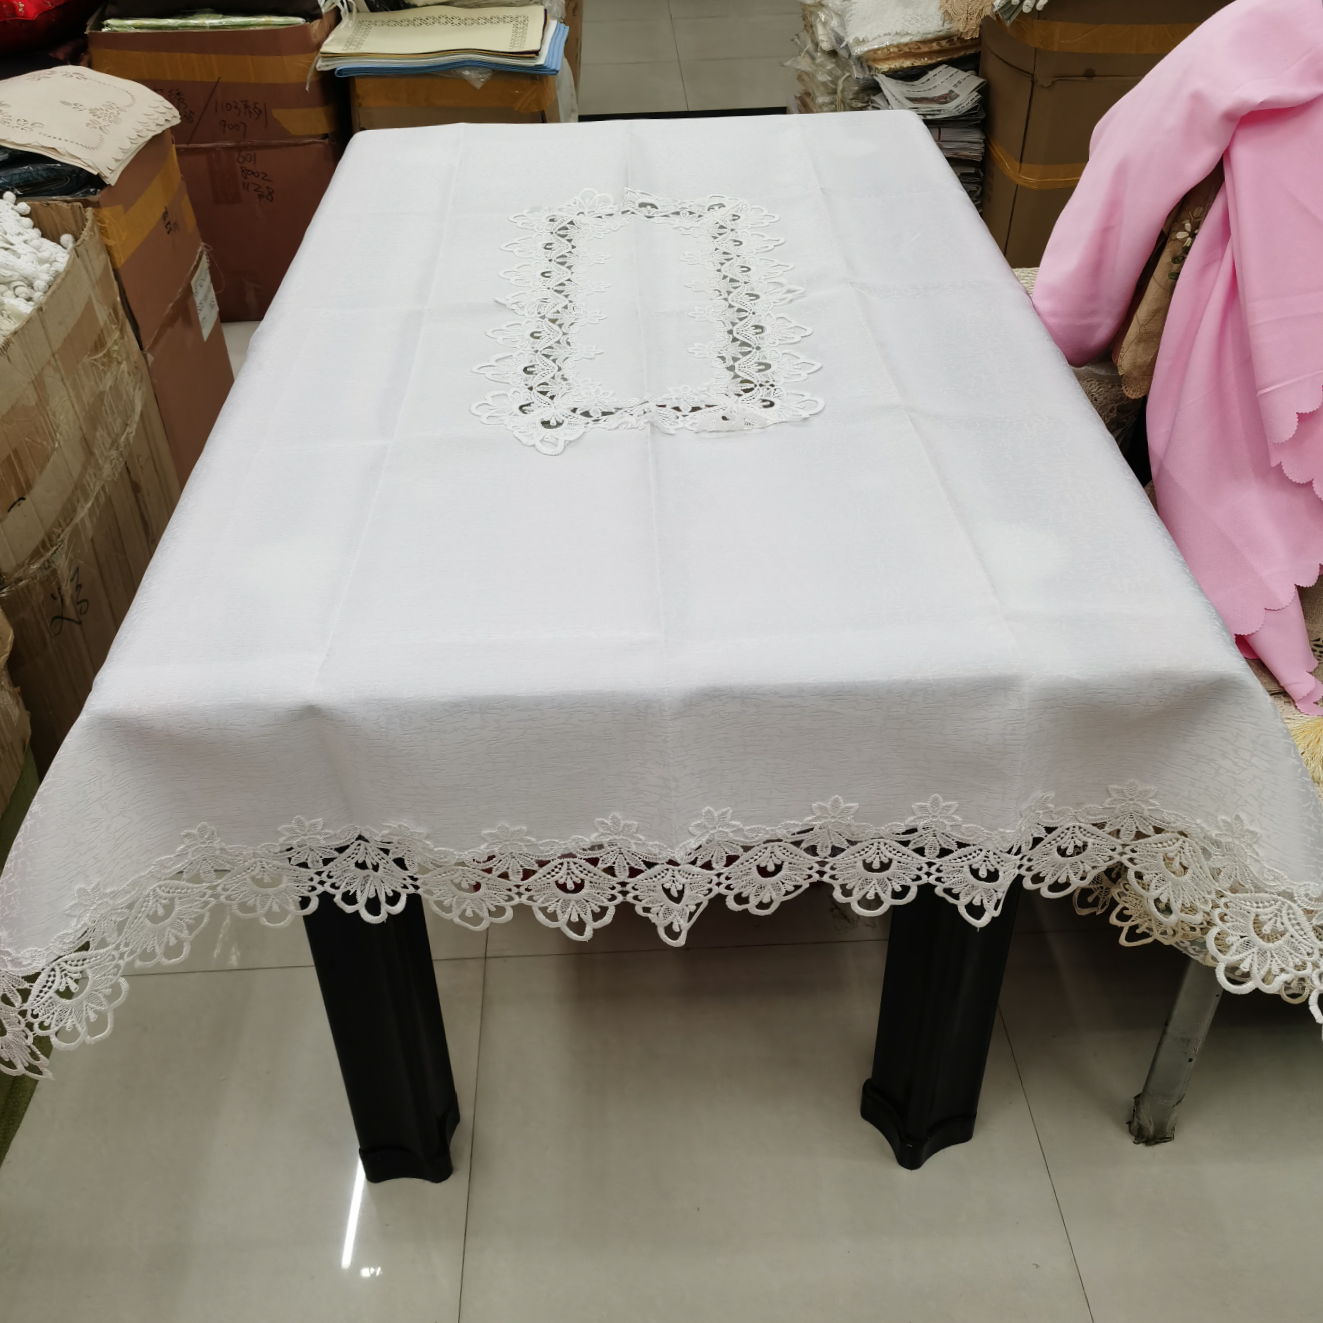 水溶花边提花贡缎桌布。尺寸120×150。